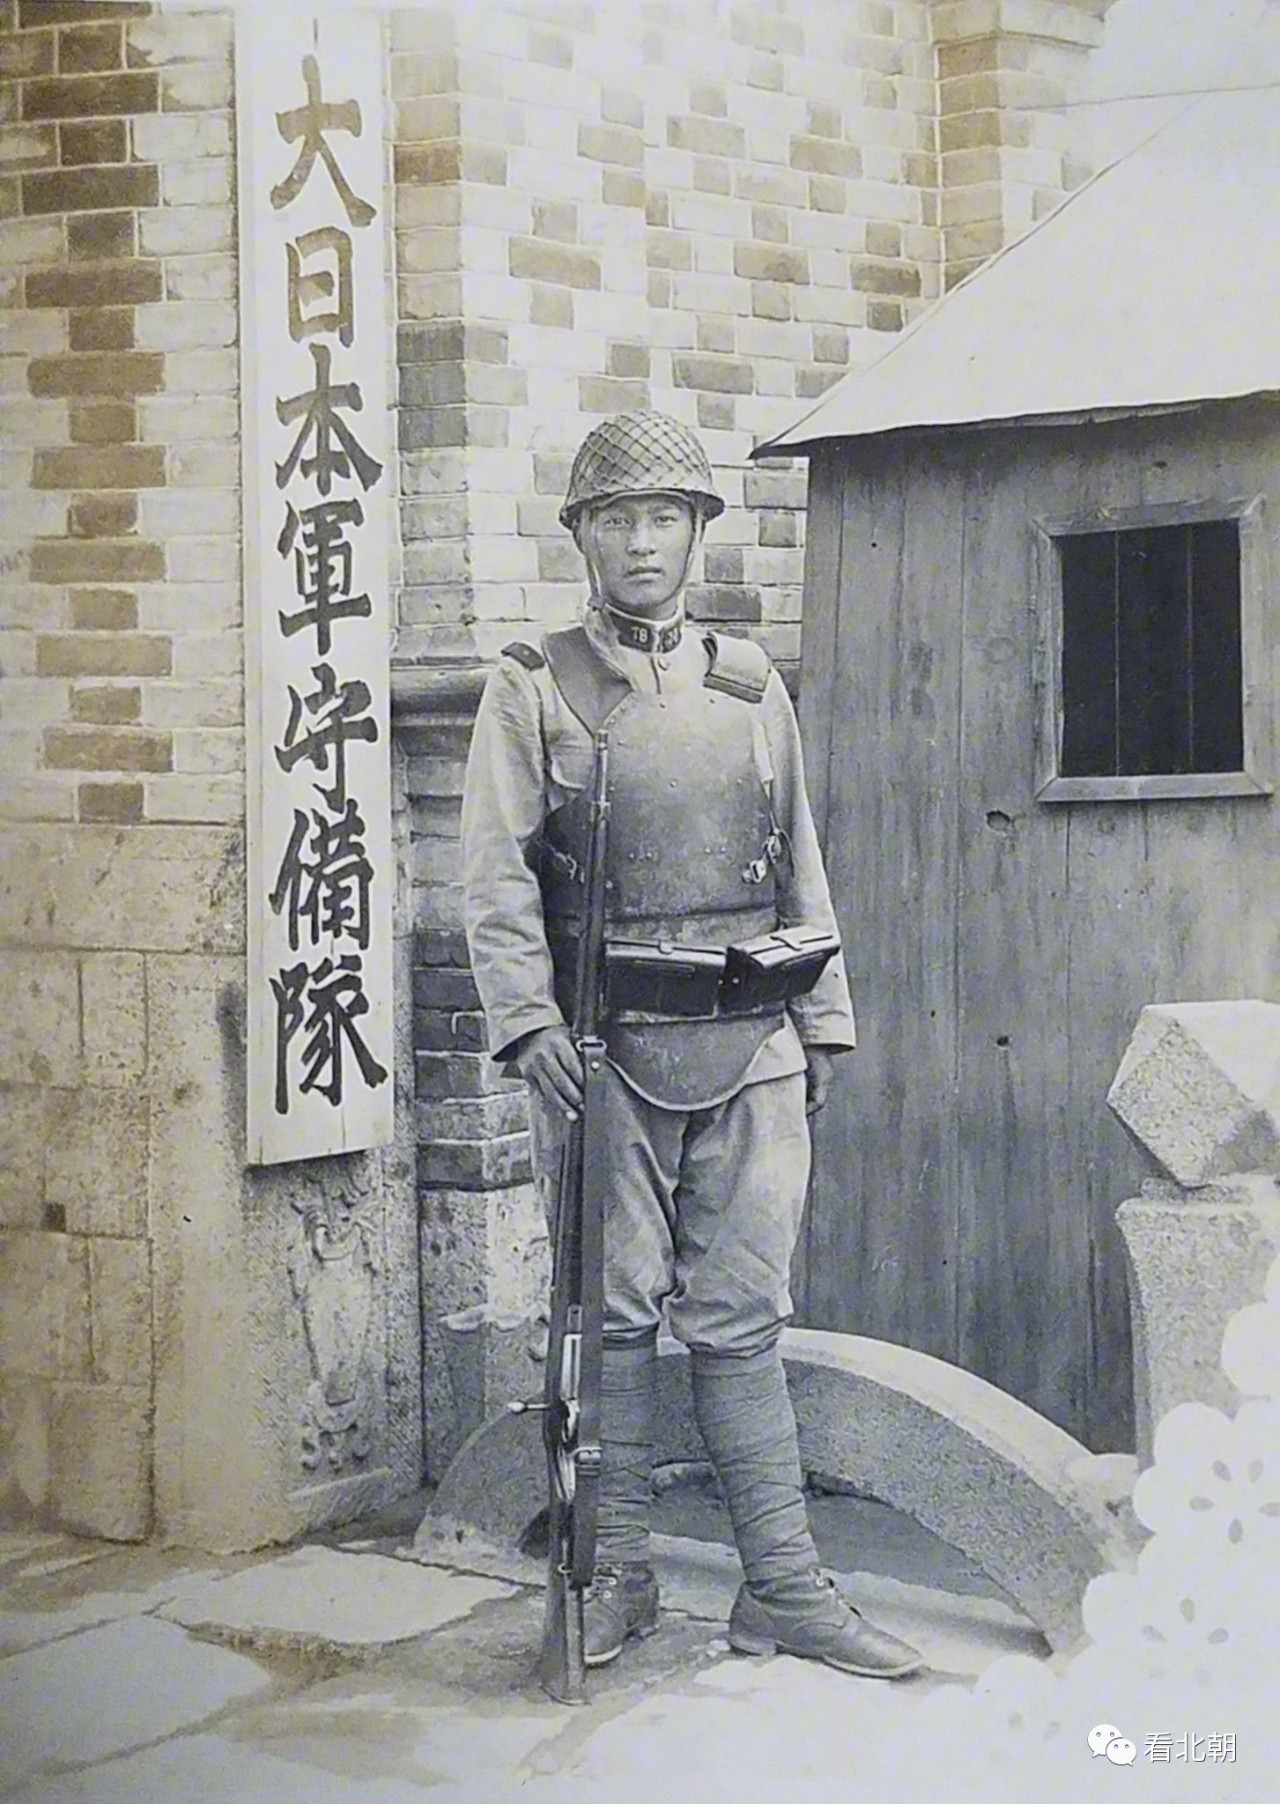 侵华日军竟装备钢制防弹衣从清末到抗战的那些老照片